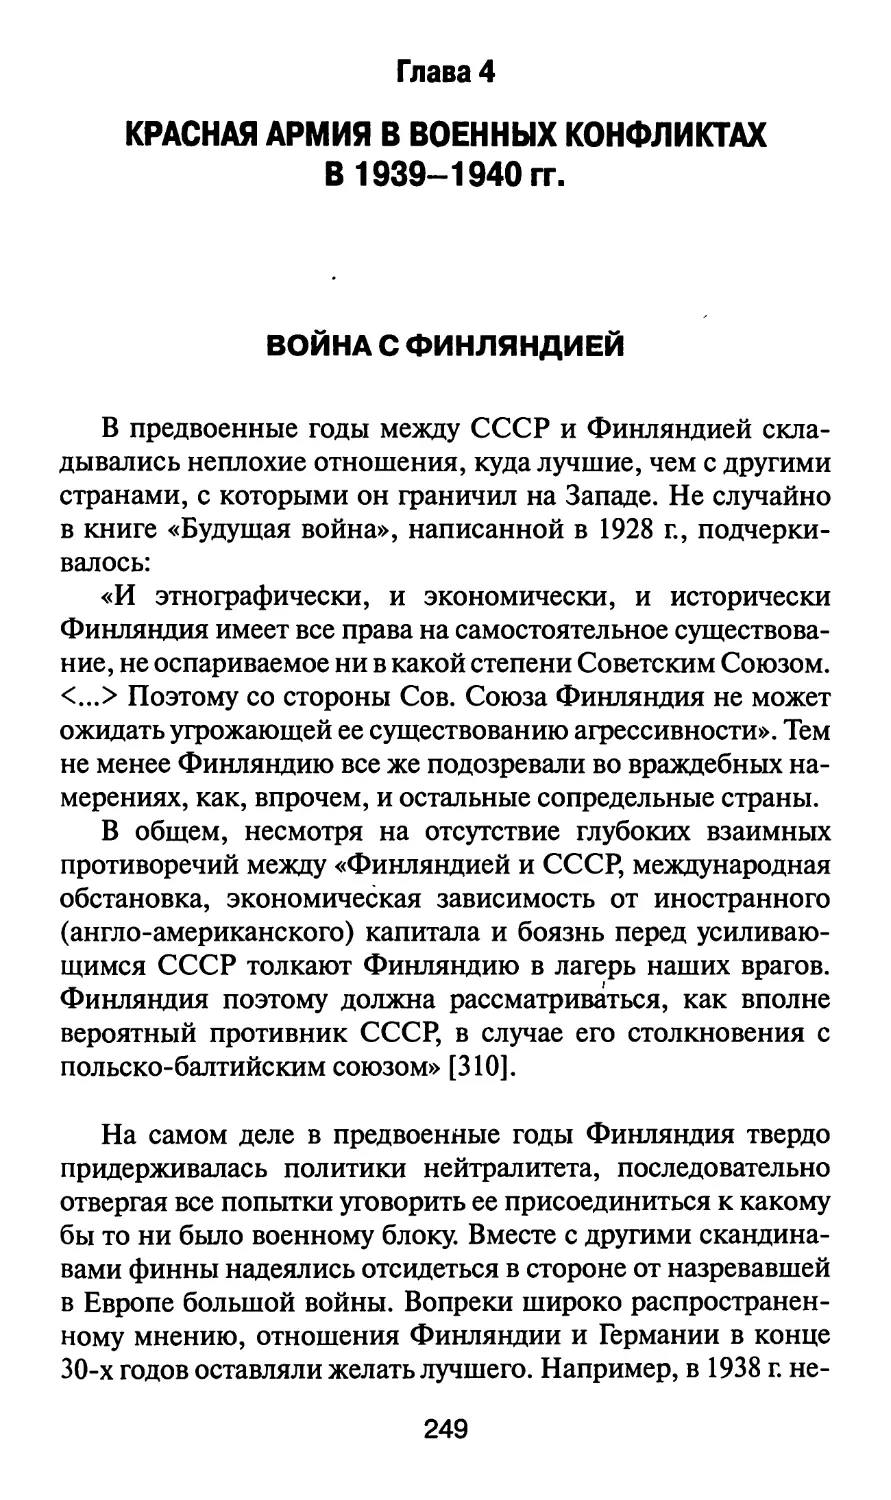 Глава 4. Красная армия в военных конфликтах 1939 - 1940 гг.